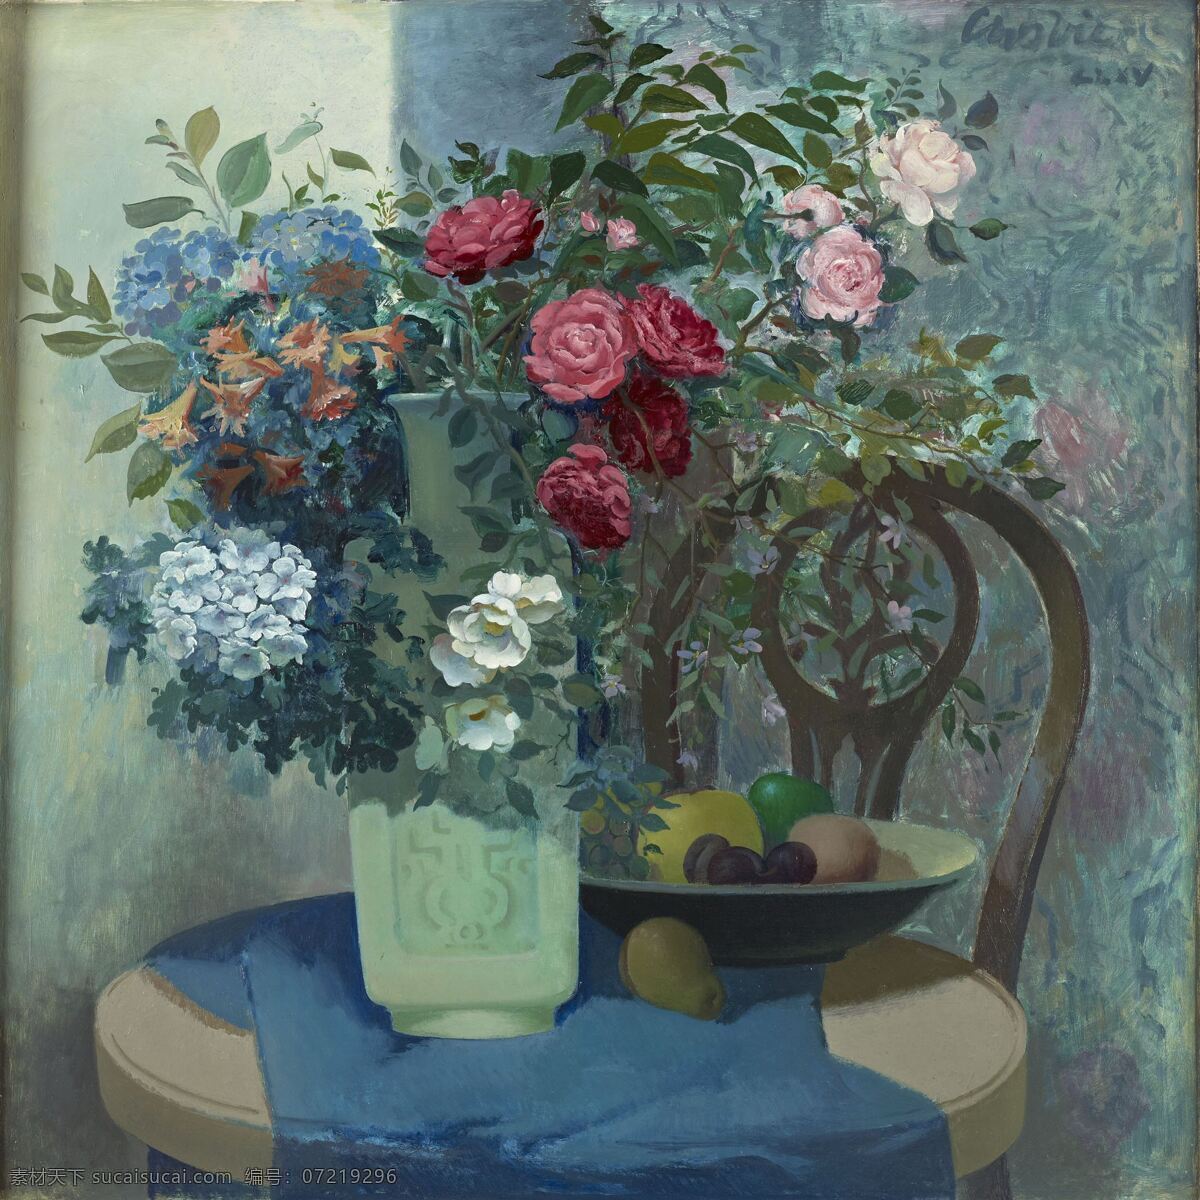 静物鲜花 混搭鲜花 中国式花瓶 水果 葡萄 梨 蓝色桌布 20世纪油画 油画 绘画书法 文化艺术